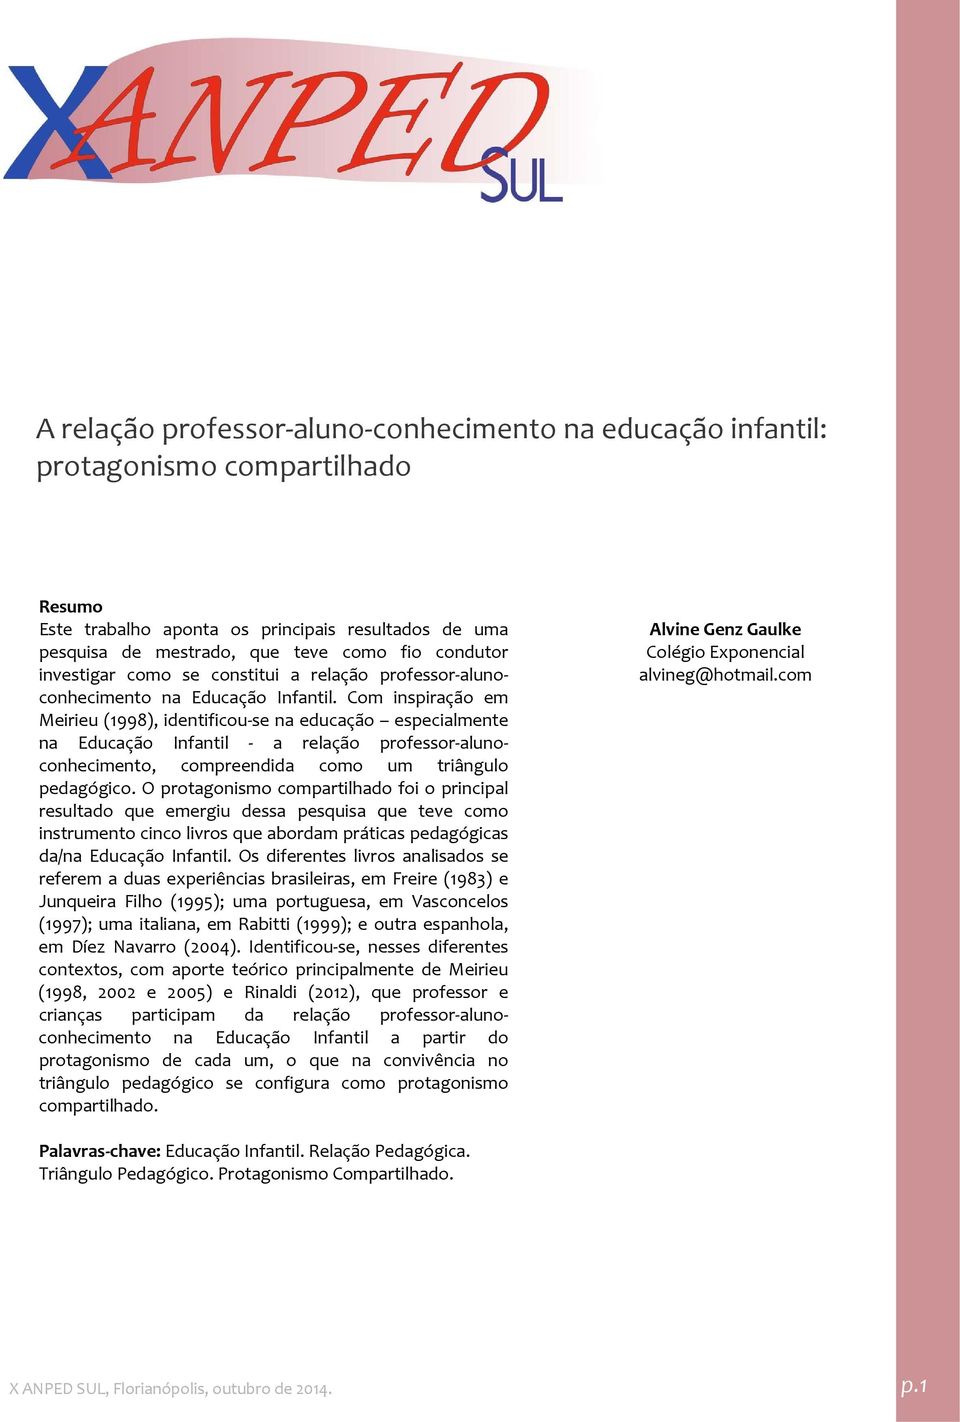 Com inspiração em Meirieu (1998), identificou se na educação especialmente na Educação Infantil a relação professor alunoconhecimento, compreendida como um triângulo pedagógico.